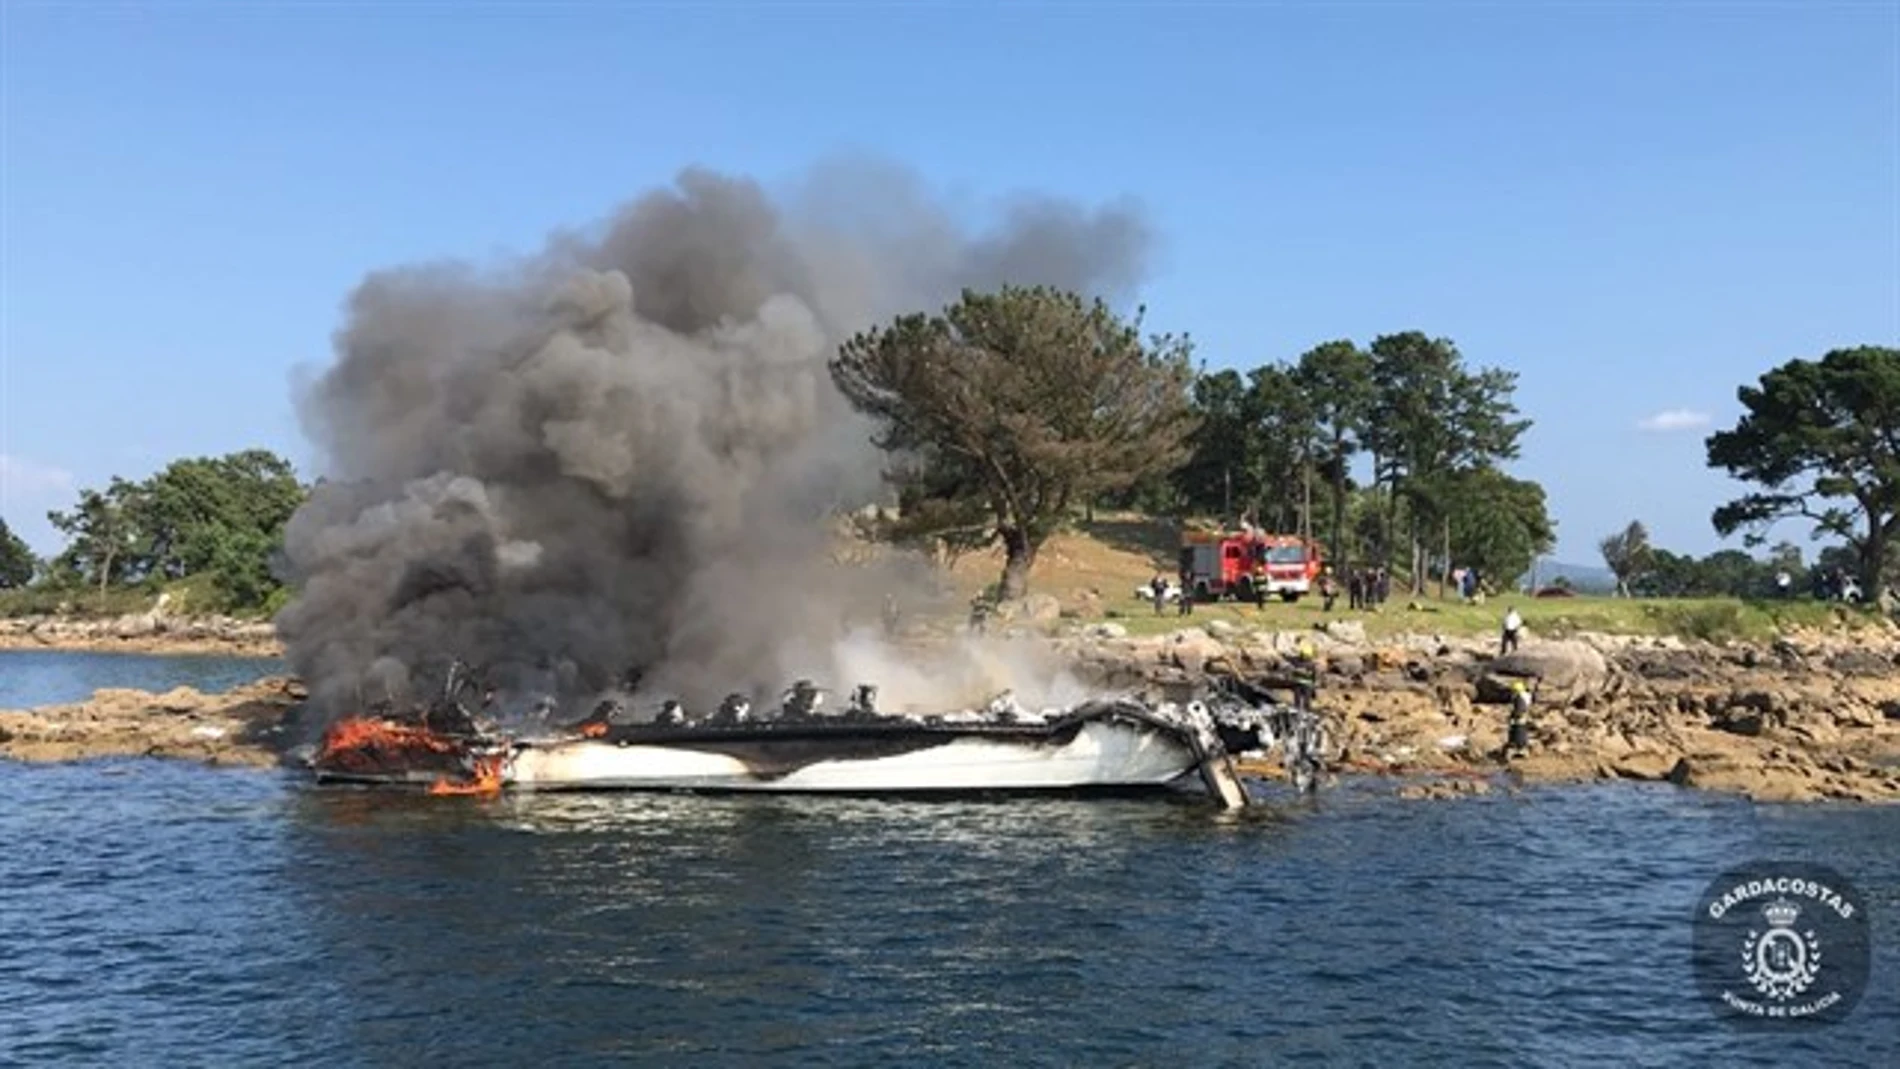 Incendio del catamarán en O Grove, Pontevedra